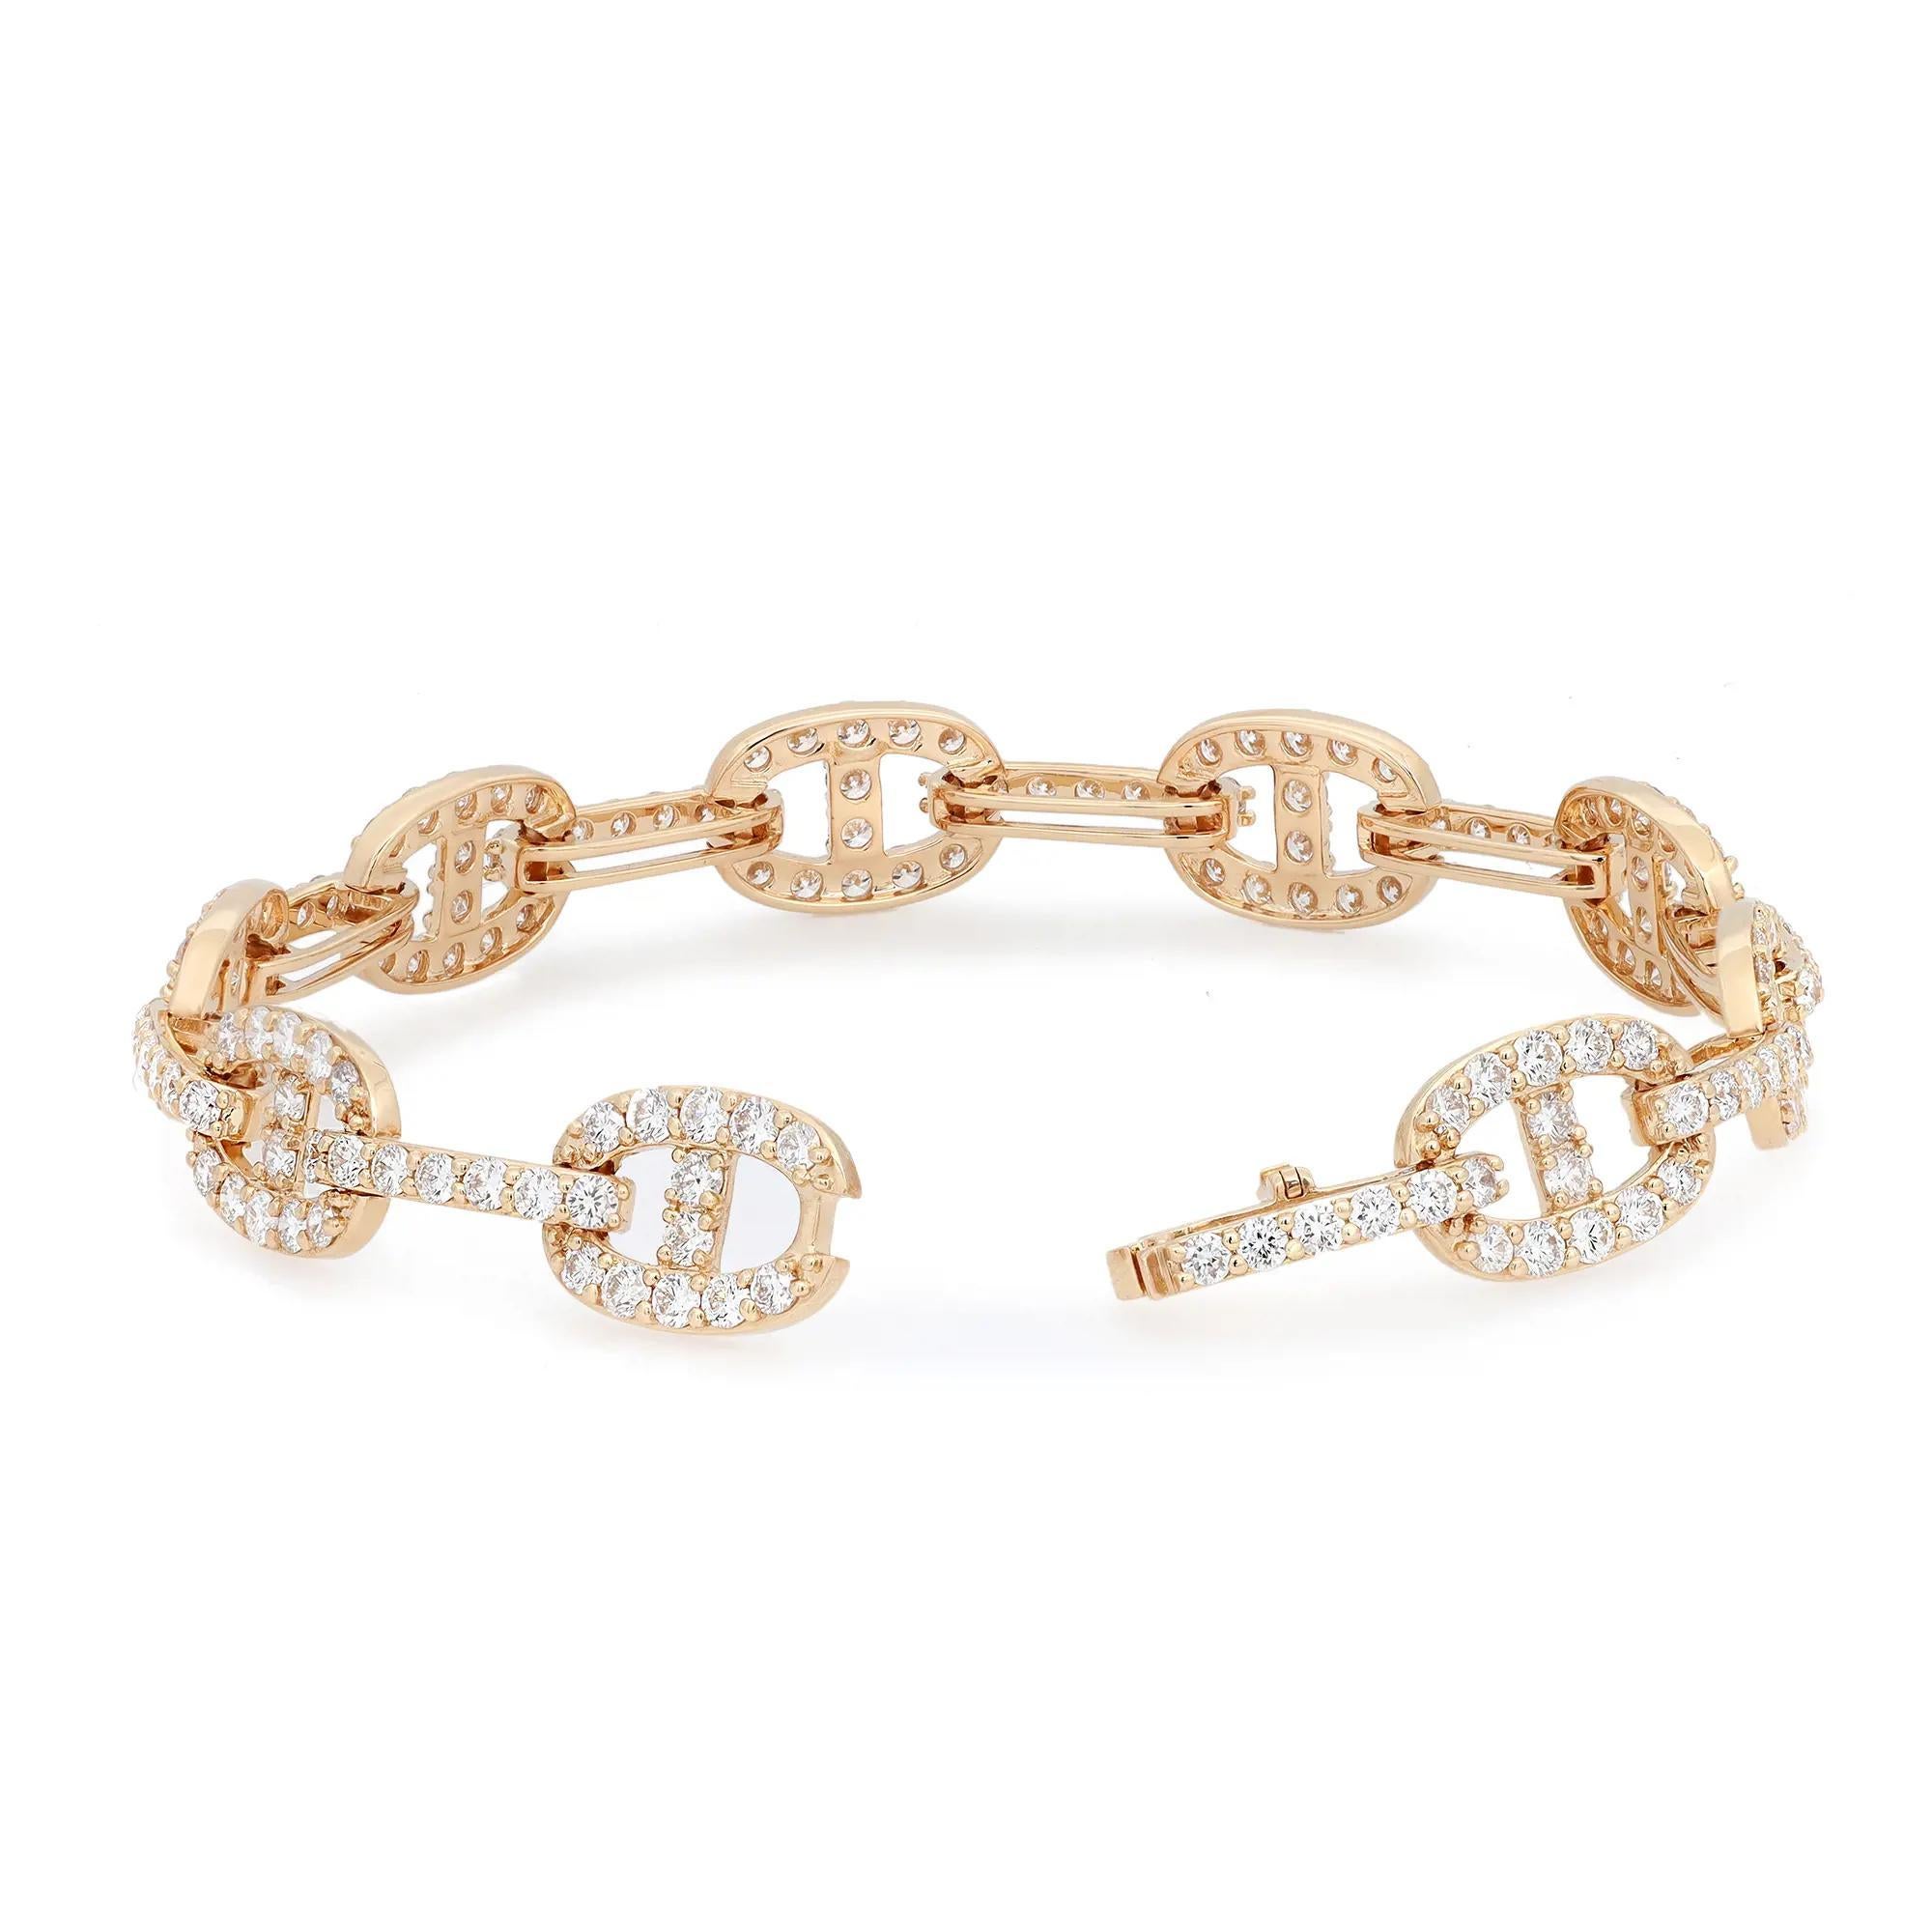 Ce bracelet tendance et chic comporte des maillons cloutés de diamants, réalisés en or jaune 18 carats. Poids total des diamants : 5,00 carats. Qualité du diamant : couleur G-H et clarté VS-SI. Longueur du bracelet : 7 pouces. Taille du lien : 12,5